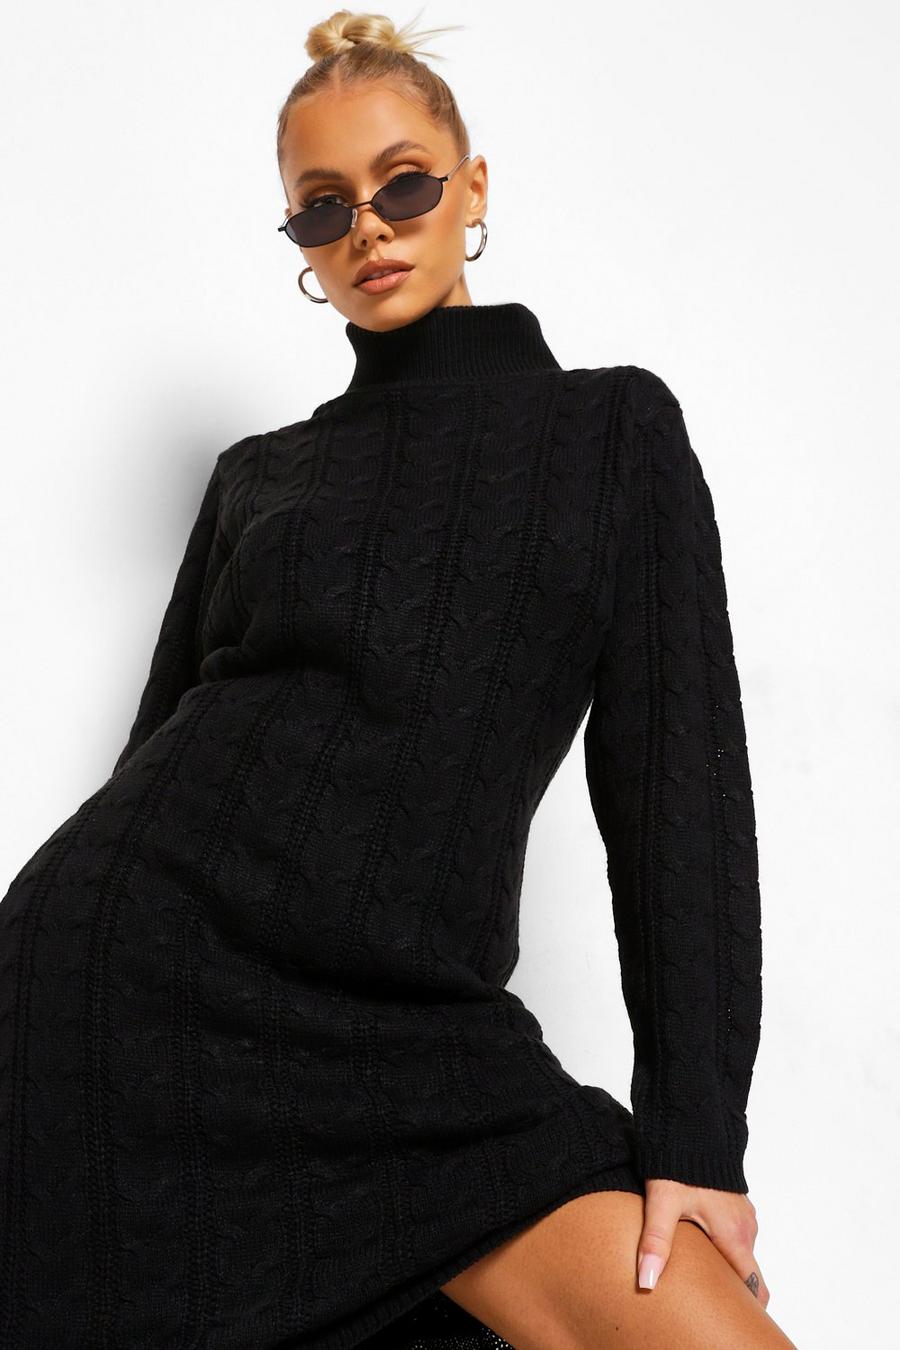 שחור שמלת סוודר בדוגמת צמה עם צווארון נגלל